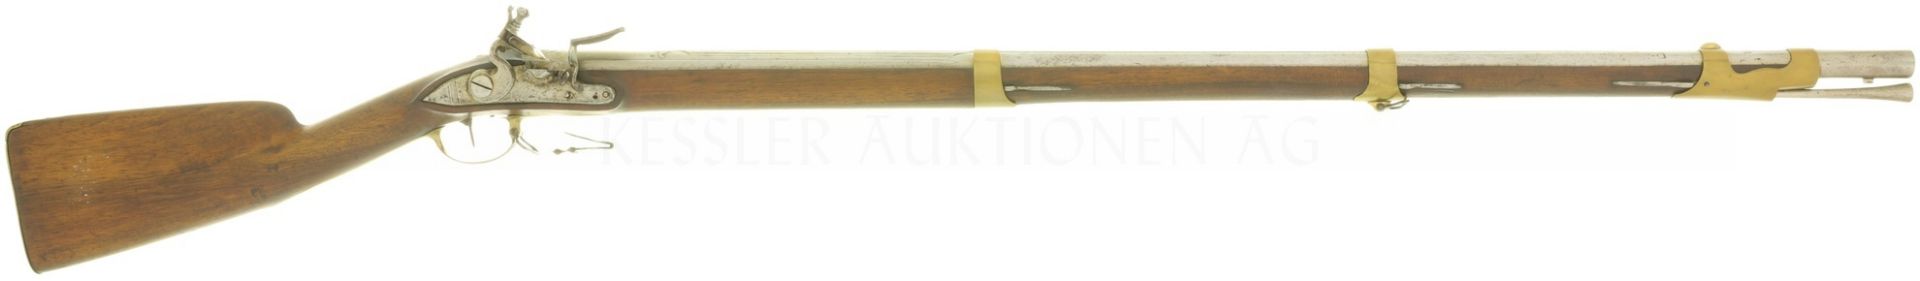 Steinschlossbüchse, deutsch um 1740, Offizierswaffe?, Kal. 17.6mm